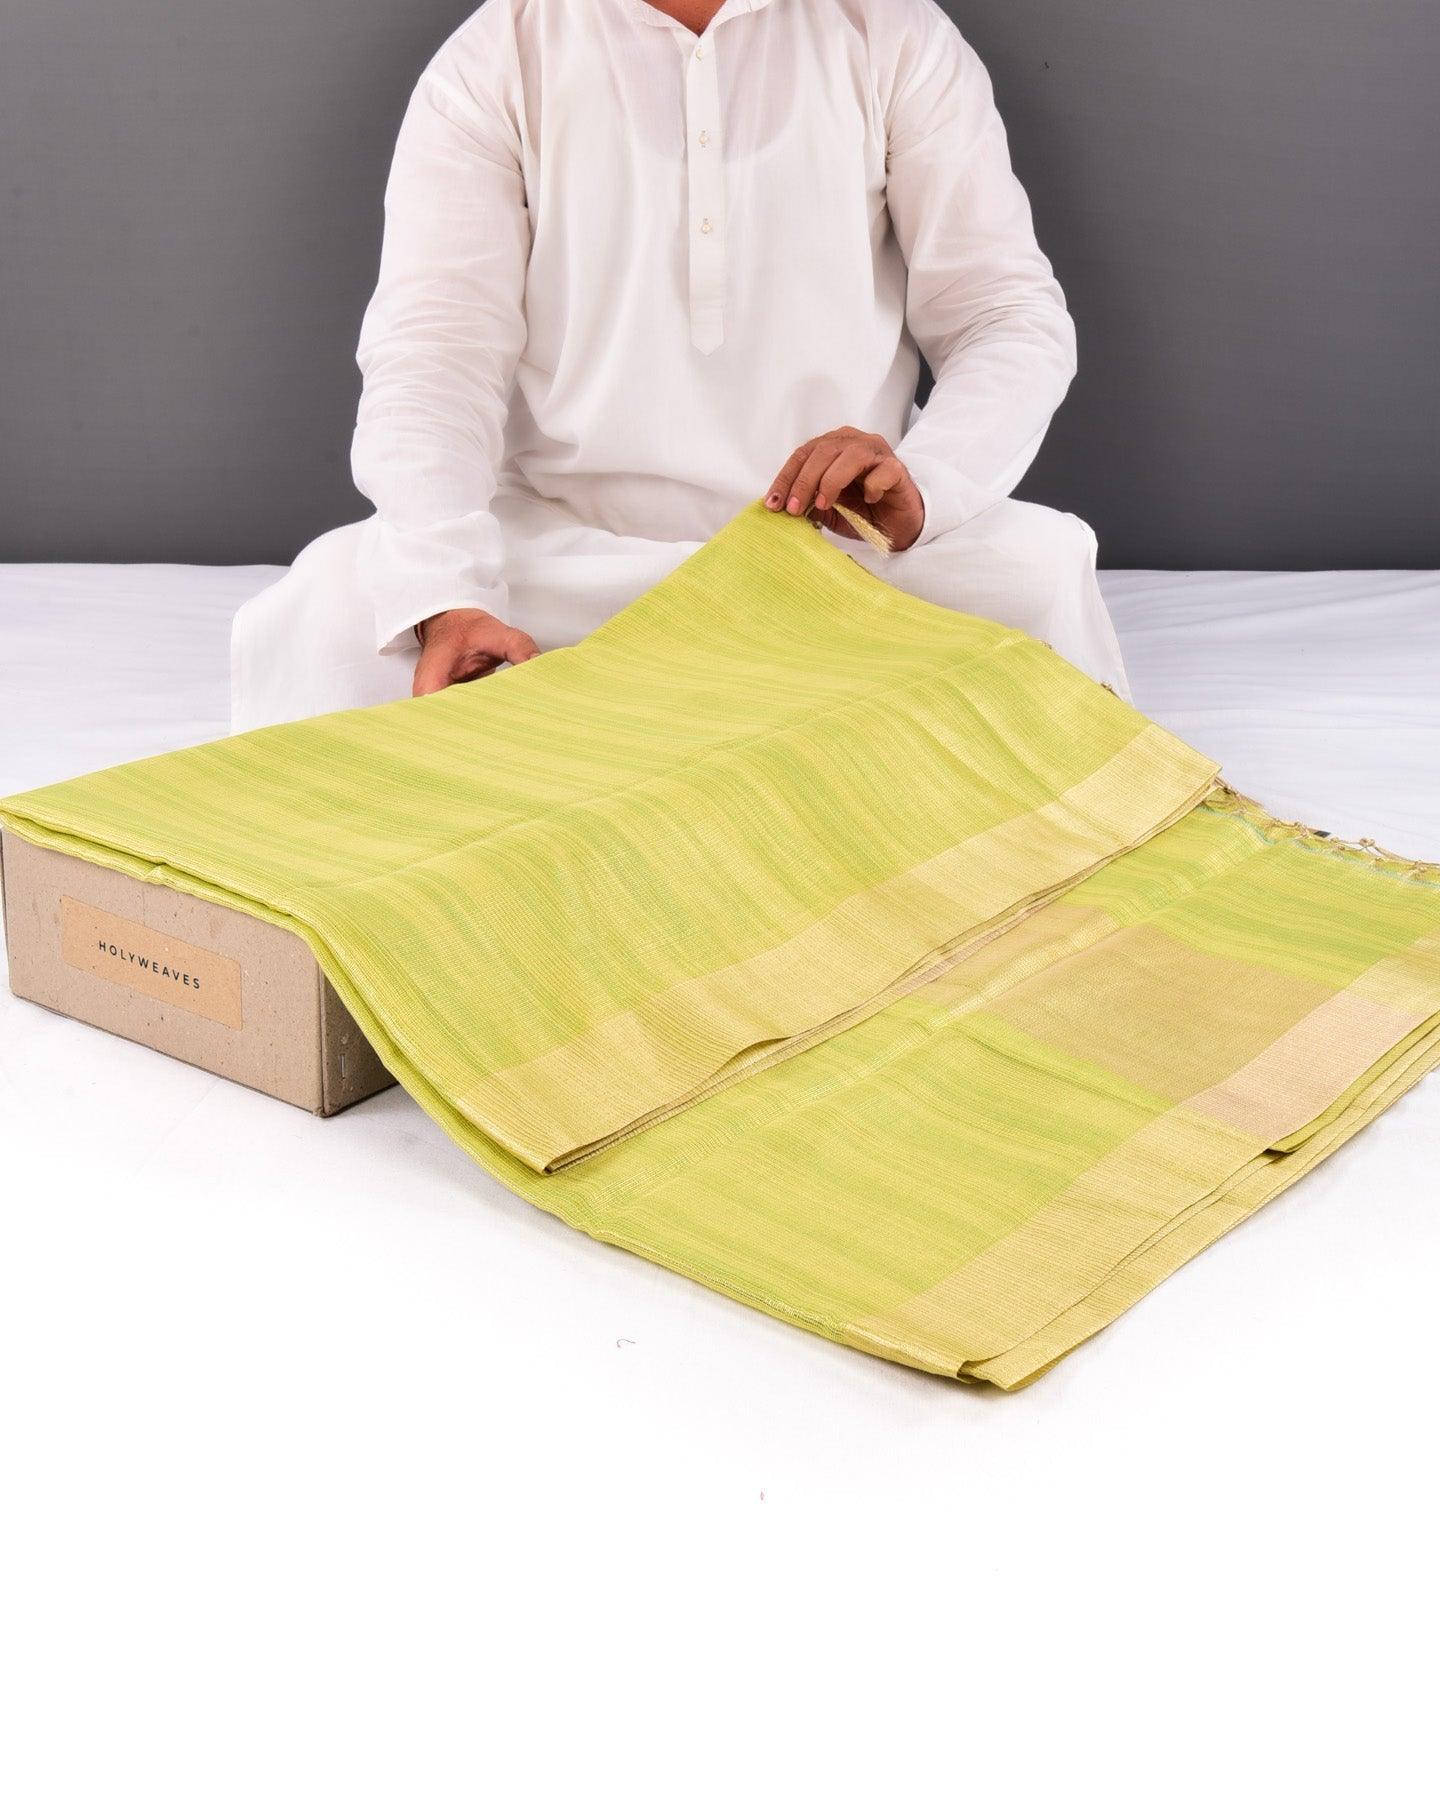 Metallic Green Banarasi Contemporary Brocade Woven Blended Cotton Tissue Saree with Zari Border - By HolyWeaves, Benares